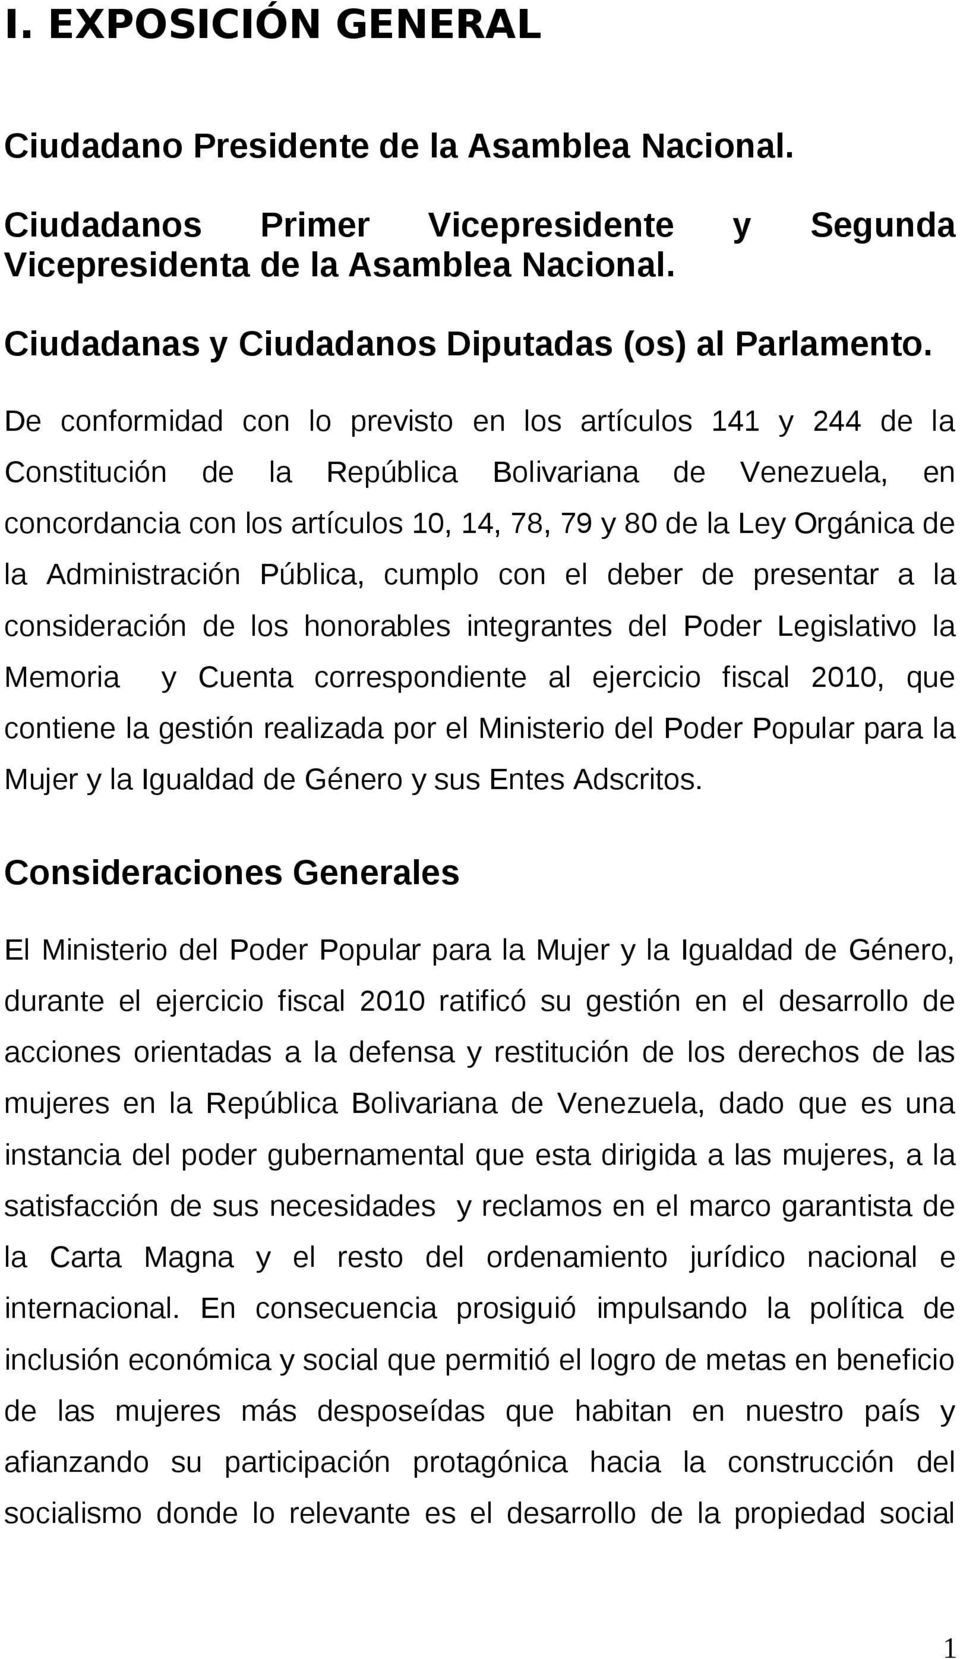 De conformidad con lo previsto en los artículos 141 y 244 de la Constitución de la República Bolivariana de Venezuela, en concordancia con los artículos 10, 14, 78, 79 y 80 de la Ley Orgánica de la